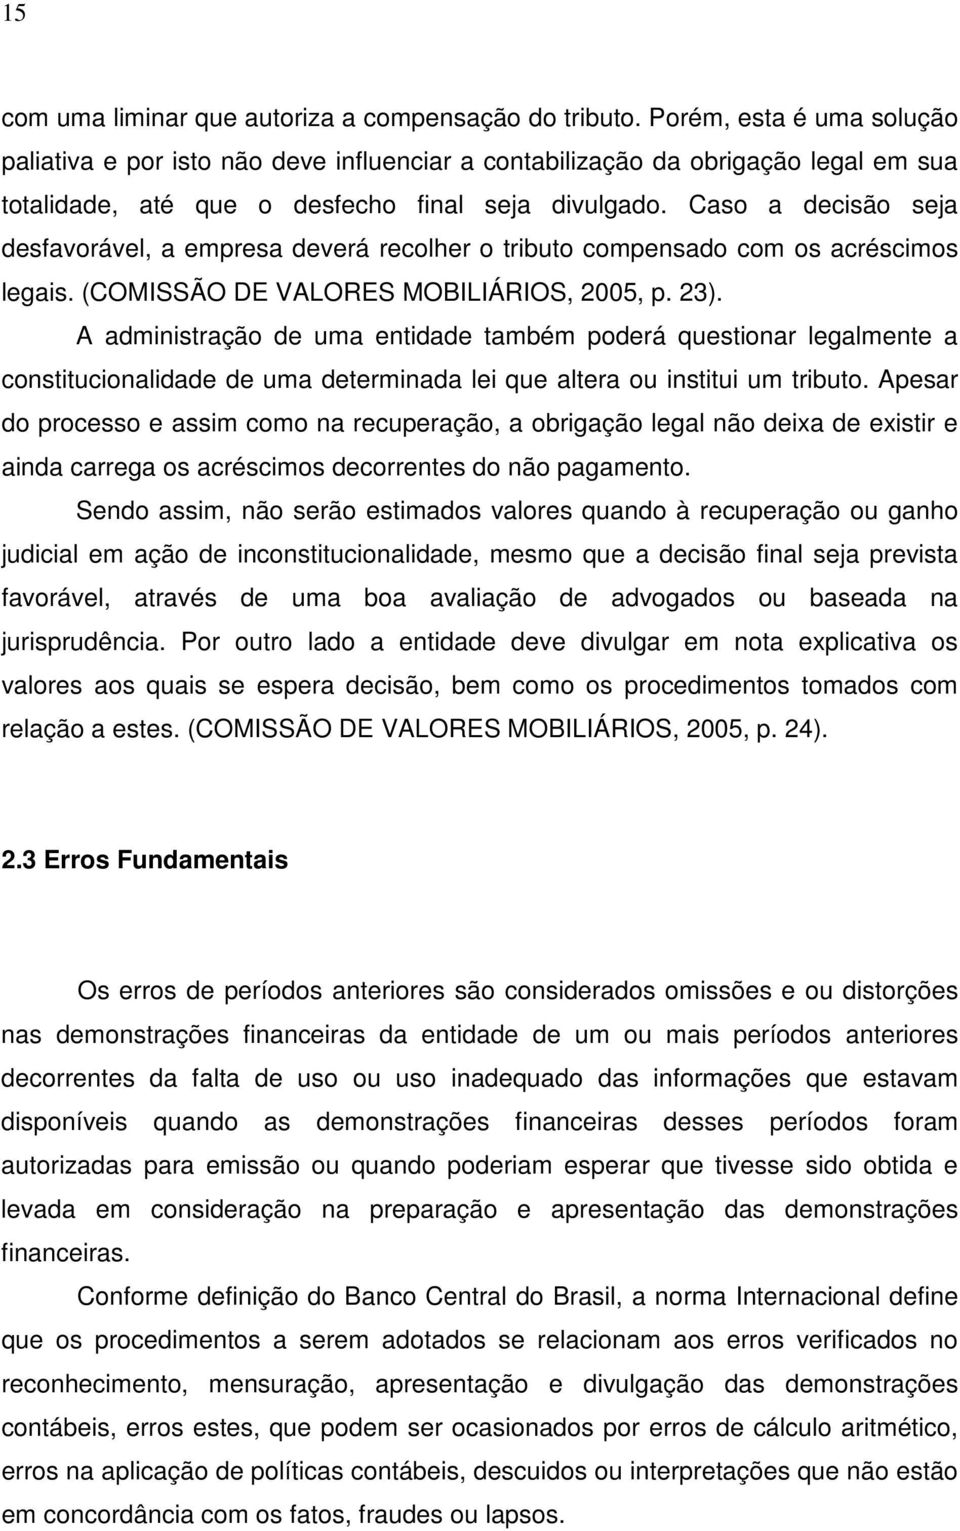 Caso a decisão seja desfavorável, a empresa deverá recolher o tributo compensado com os acréscimos legais. (COMISSÃO DE VALORES MOBILIÁRIOS, 2005, p. 23).